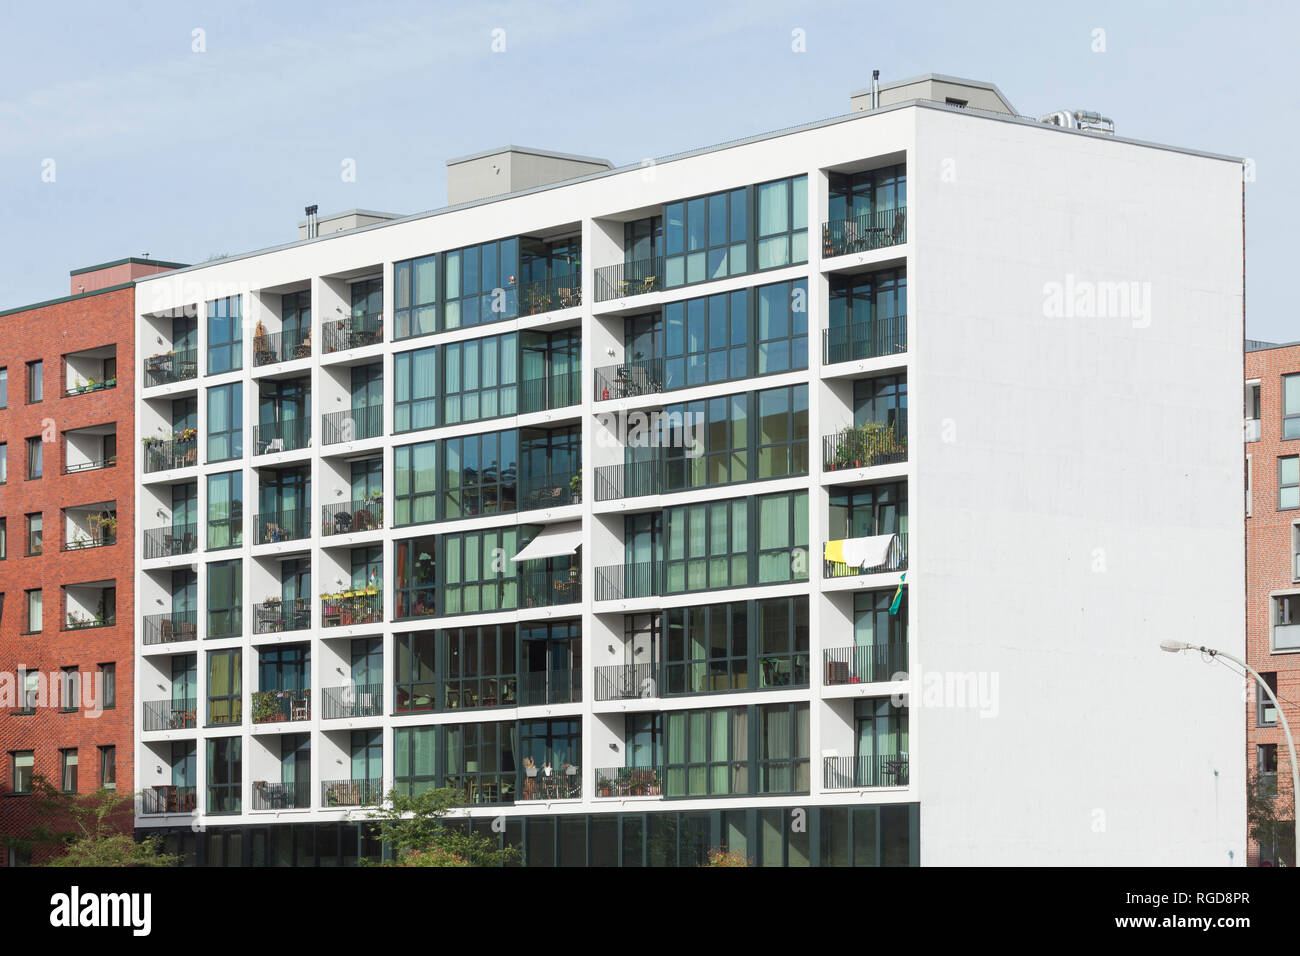 Moderno edificio residencial de Hafencity, Hamburgo, Alemania, Europa I Modernes Wohngebäude in der Hafencity, Hamburgo, Alemania, Europa Foto de stock